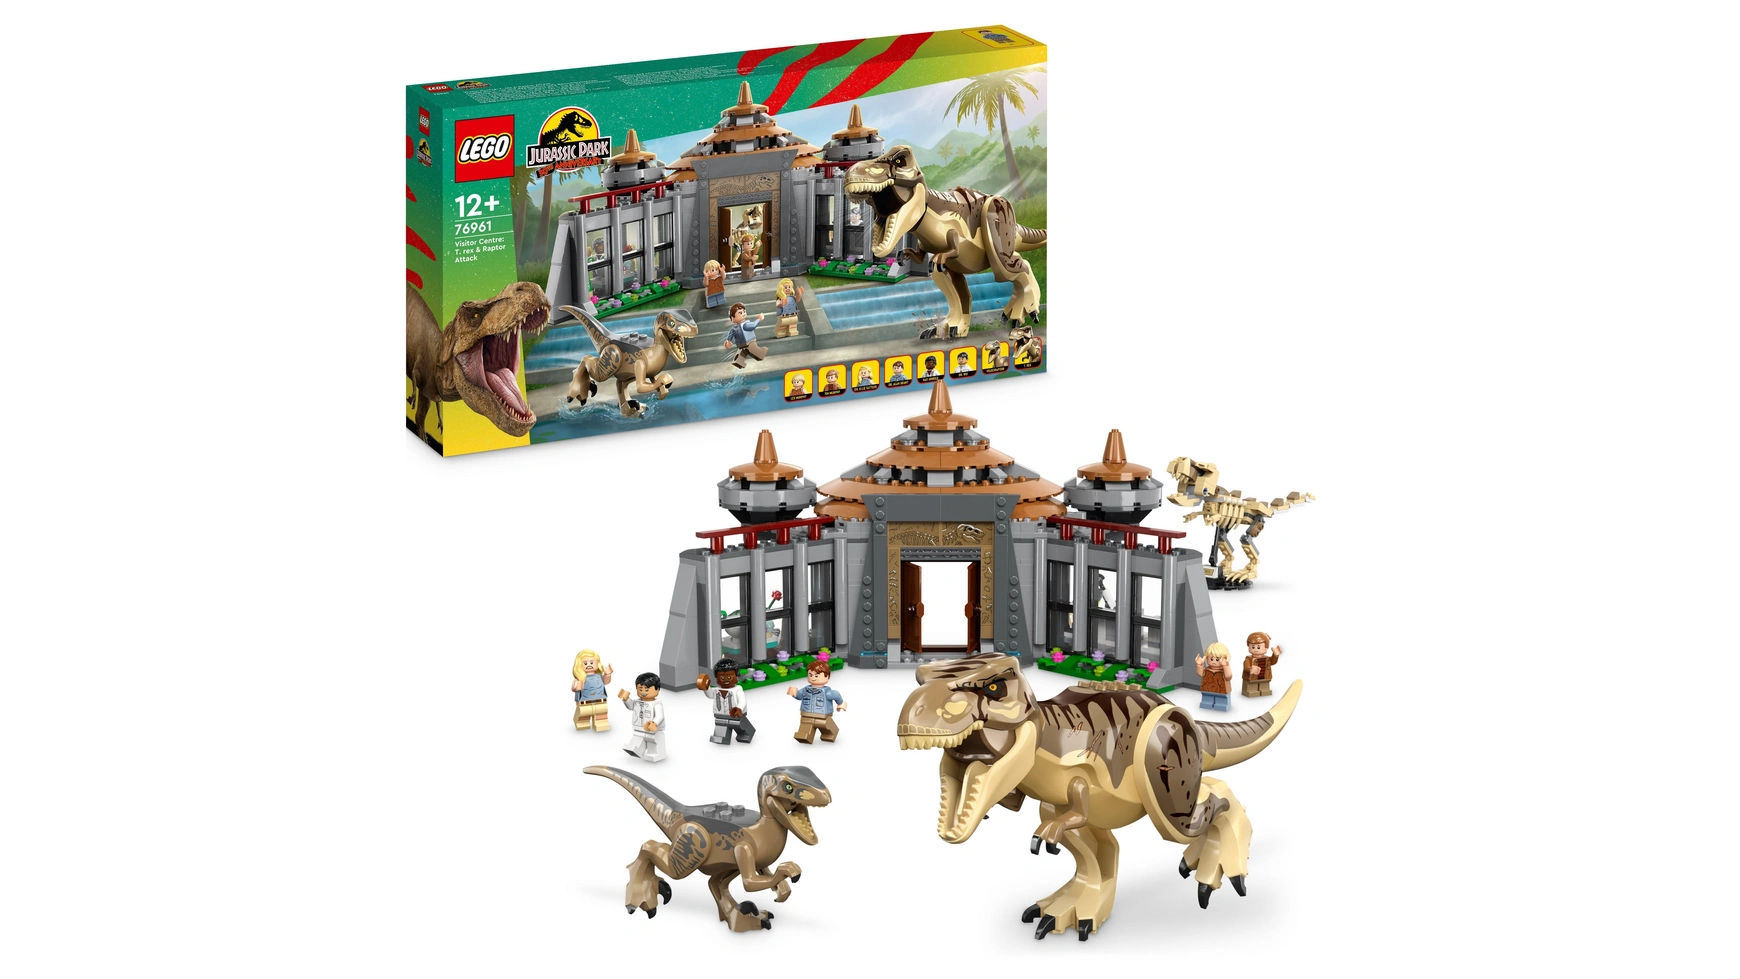 Lego Jurassic Park Ти-рекс и хищник нападают на центр для посетителей lego jurassic world центр спасения детенышей динозавров